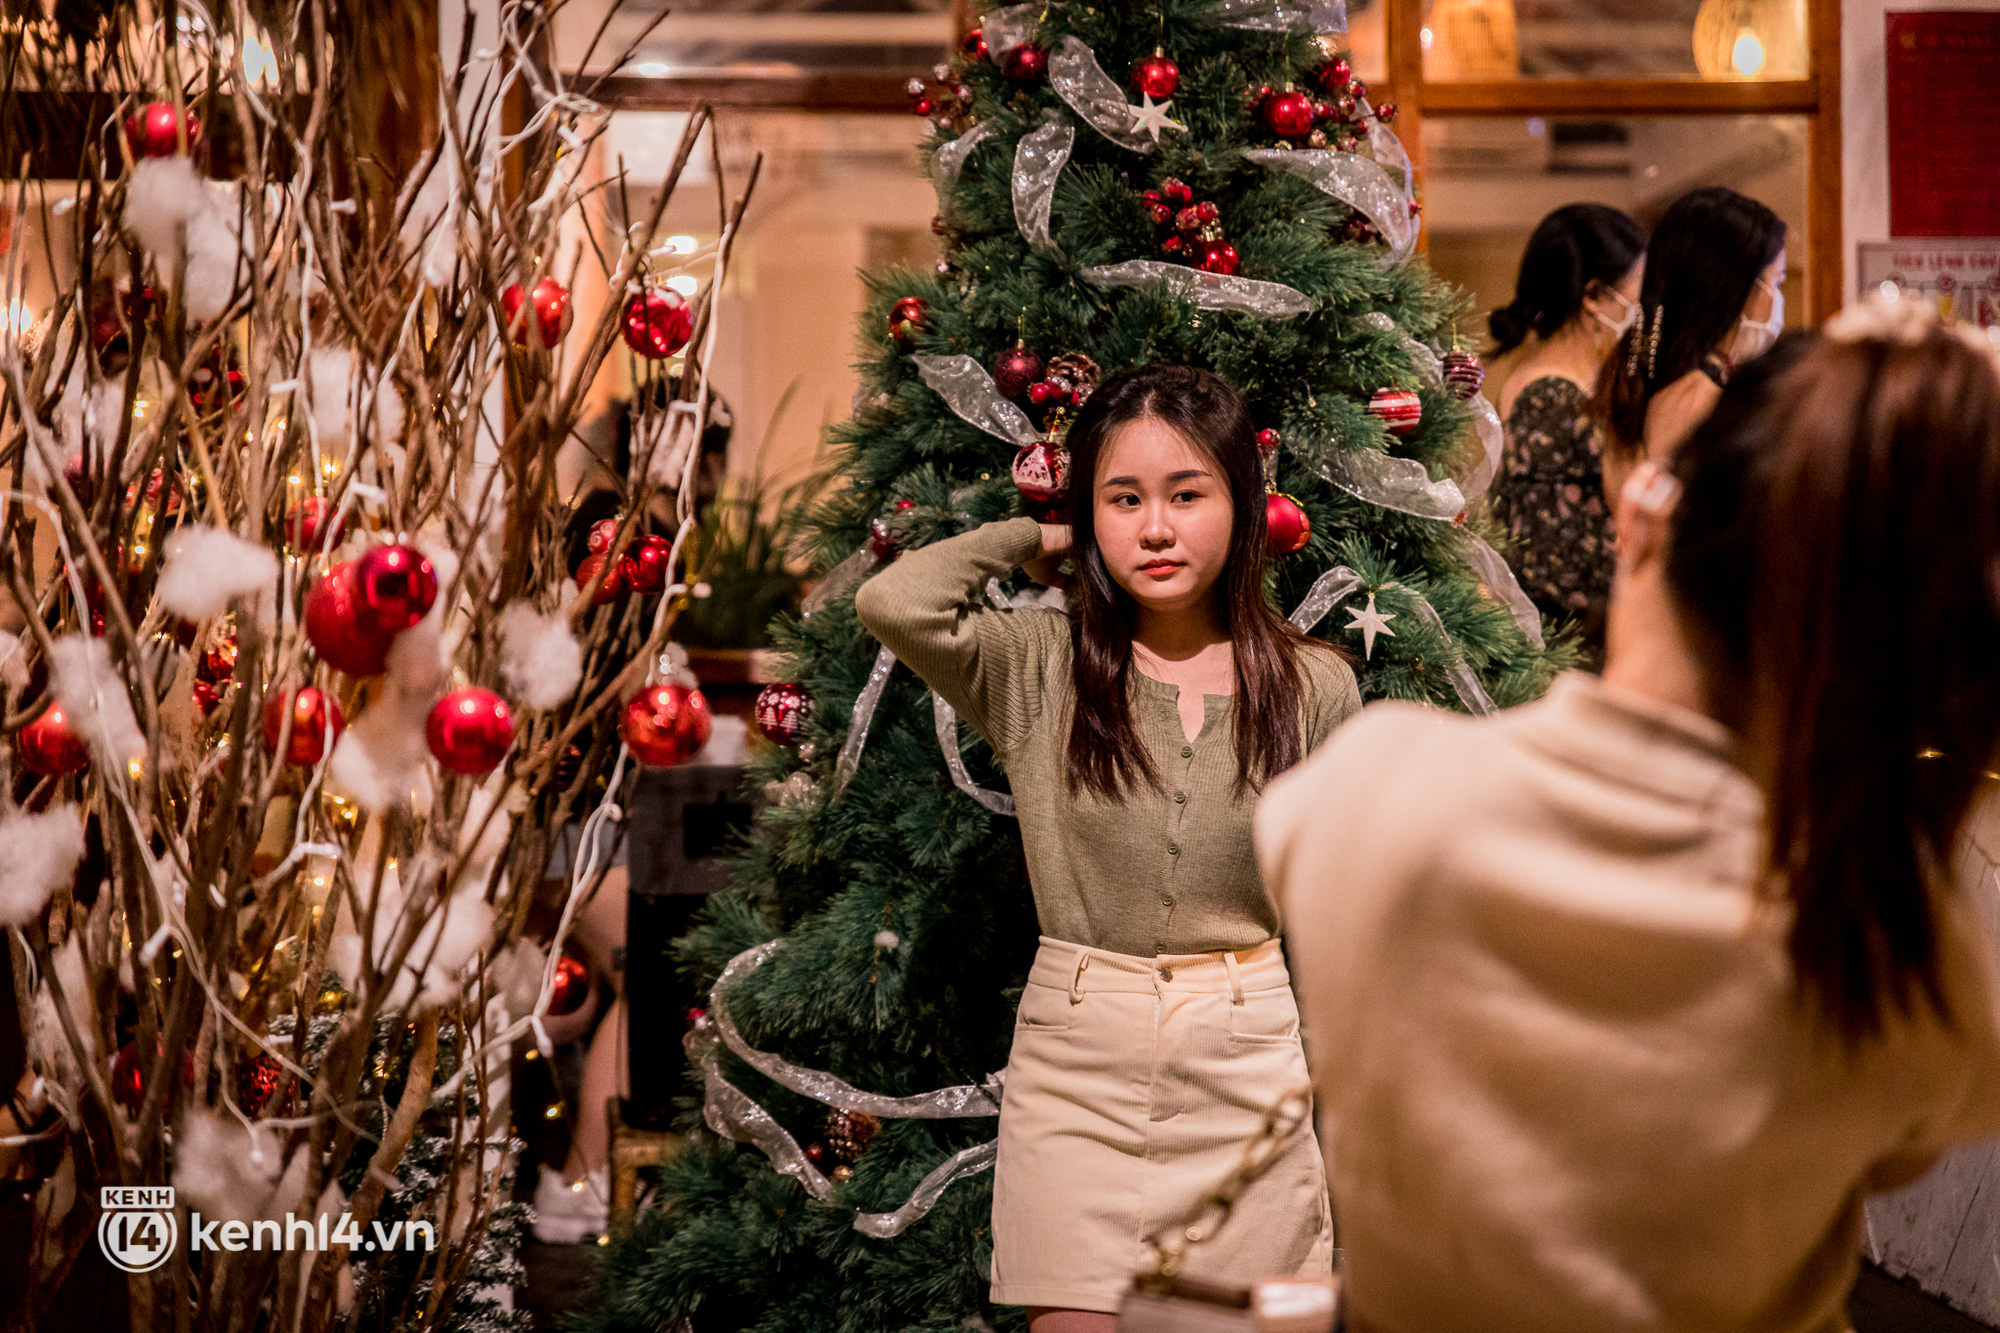 Quán cà phê Sài Gòn chật kín khách đu đưa mùa Giáng sinh, có nơi phải đứng xếp hàng dài để chờ chụp ảnh với tuyết? - Ảnh 11.